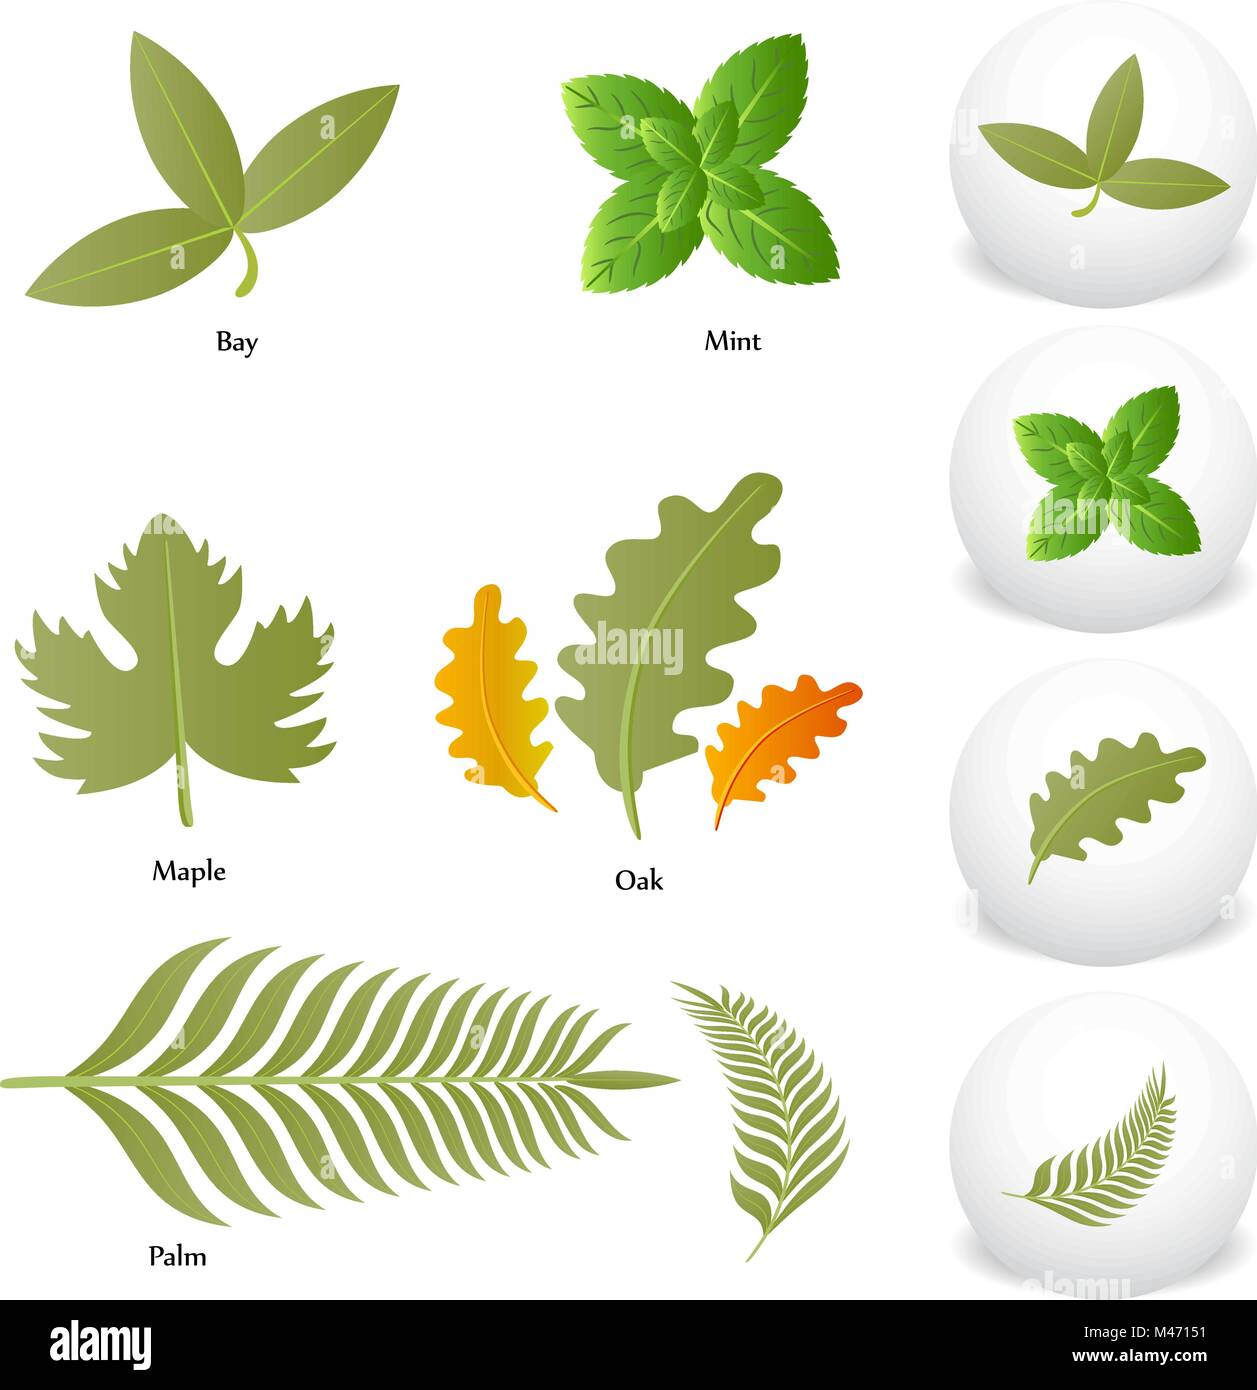 Une image de l'érable Chêne Menthe Bay Palm Leaf Icon Set de dessin. Illustration de Vecteur